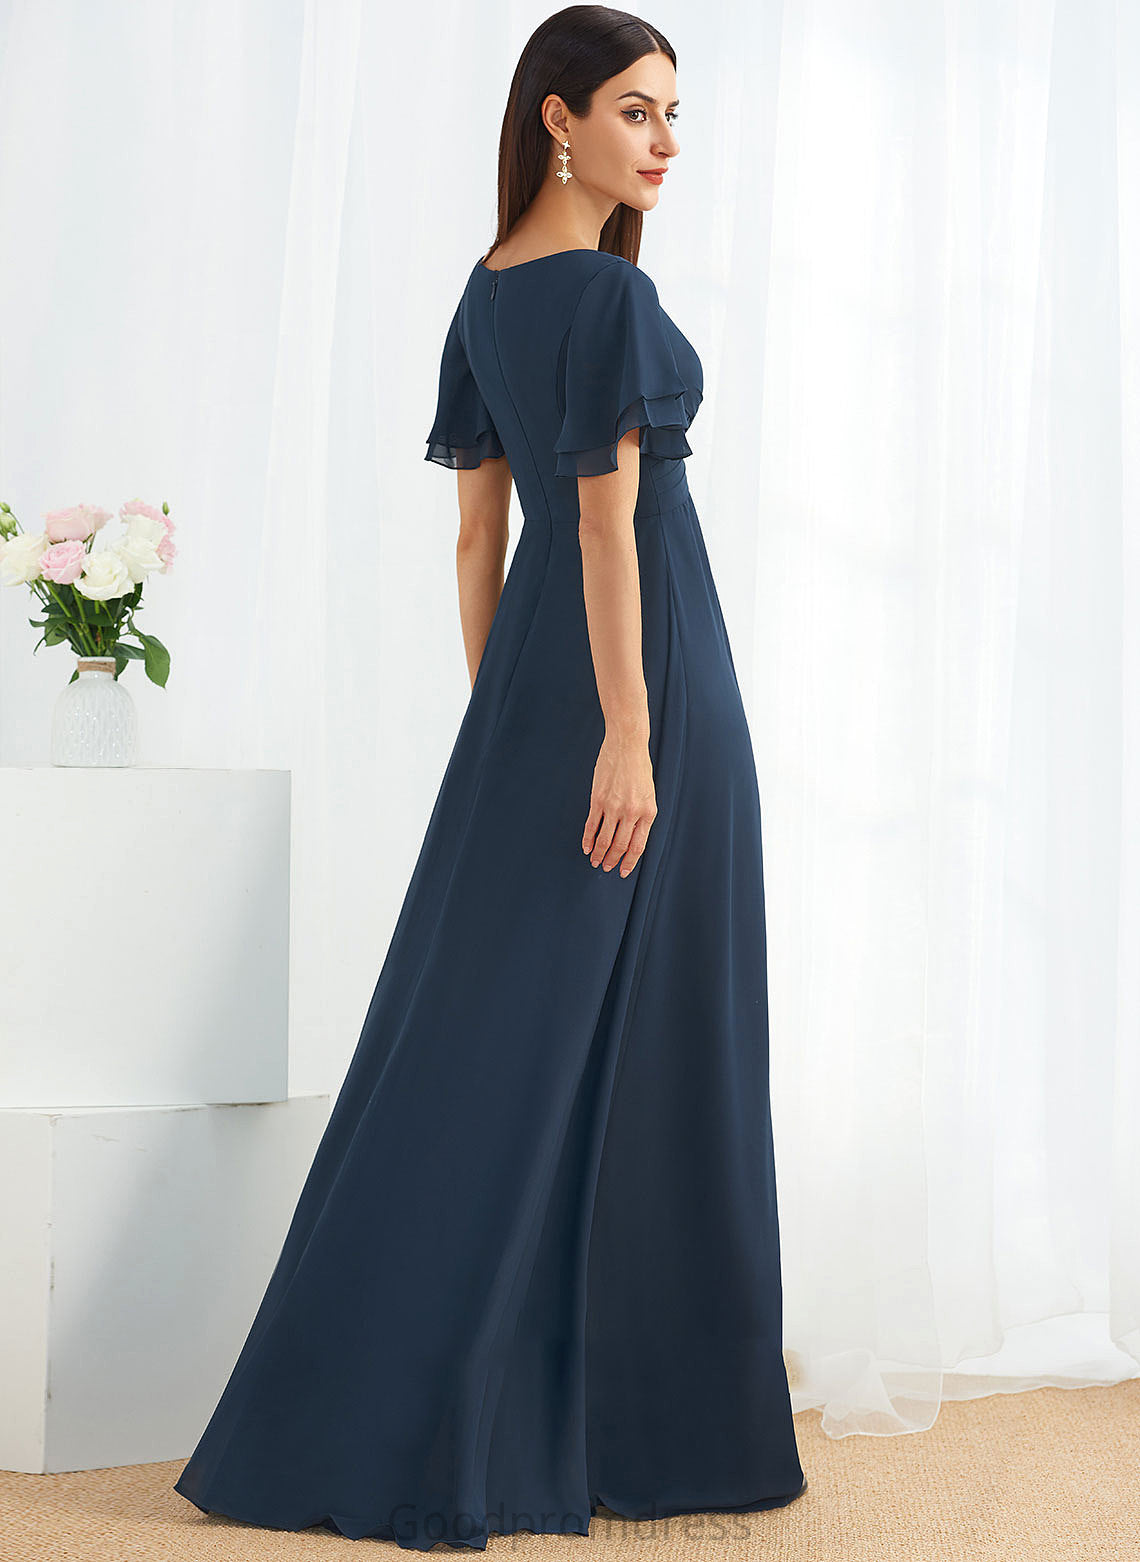 Length Floor-Length Silhouette Embellishment Fabric Neckline SplitFront A-Line V-neck Krista A-Line/Princess Halter Bridesmaid Dresses